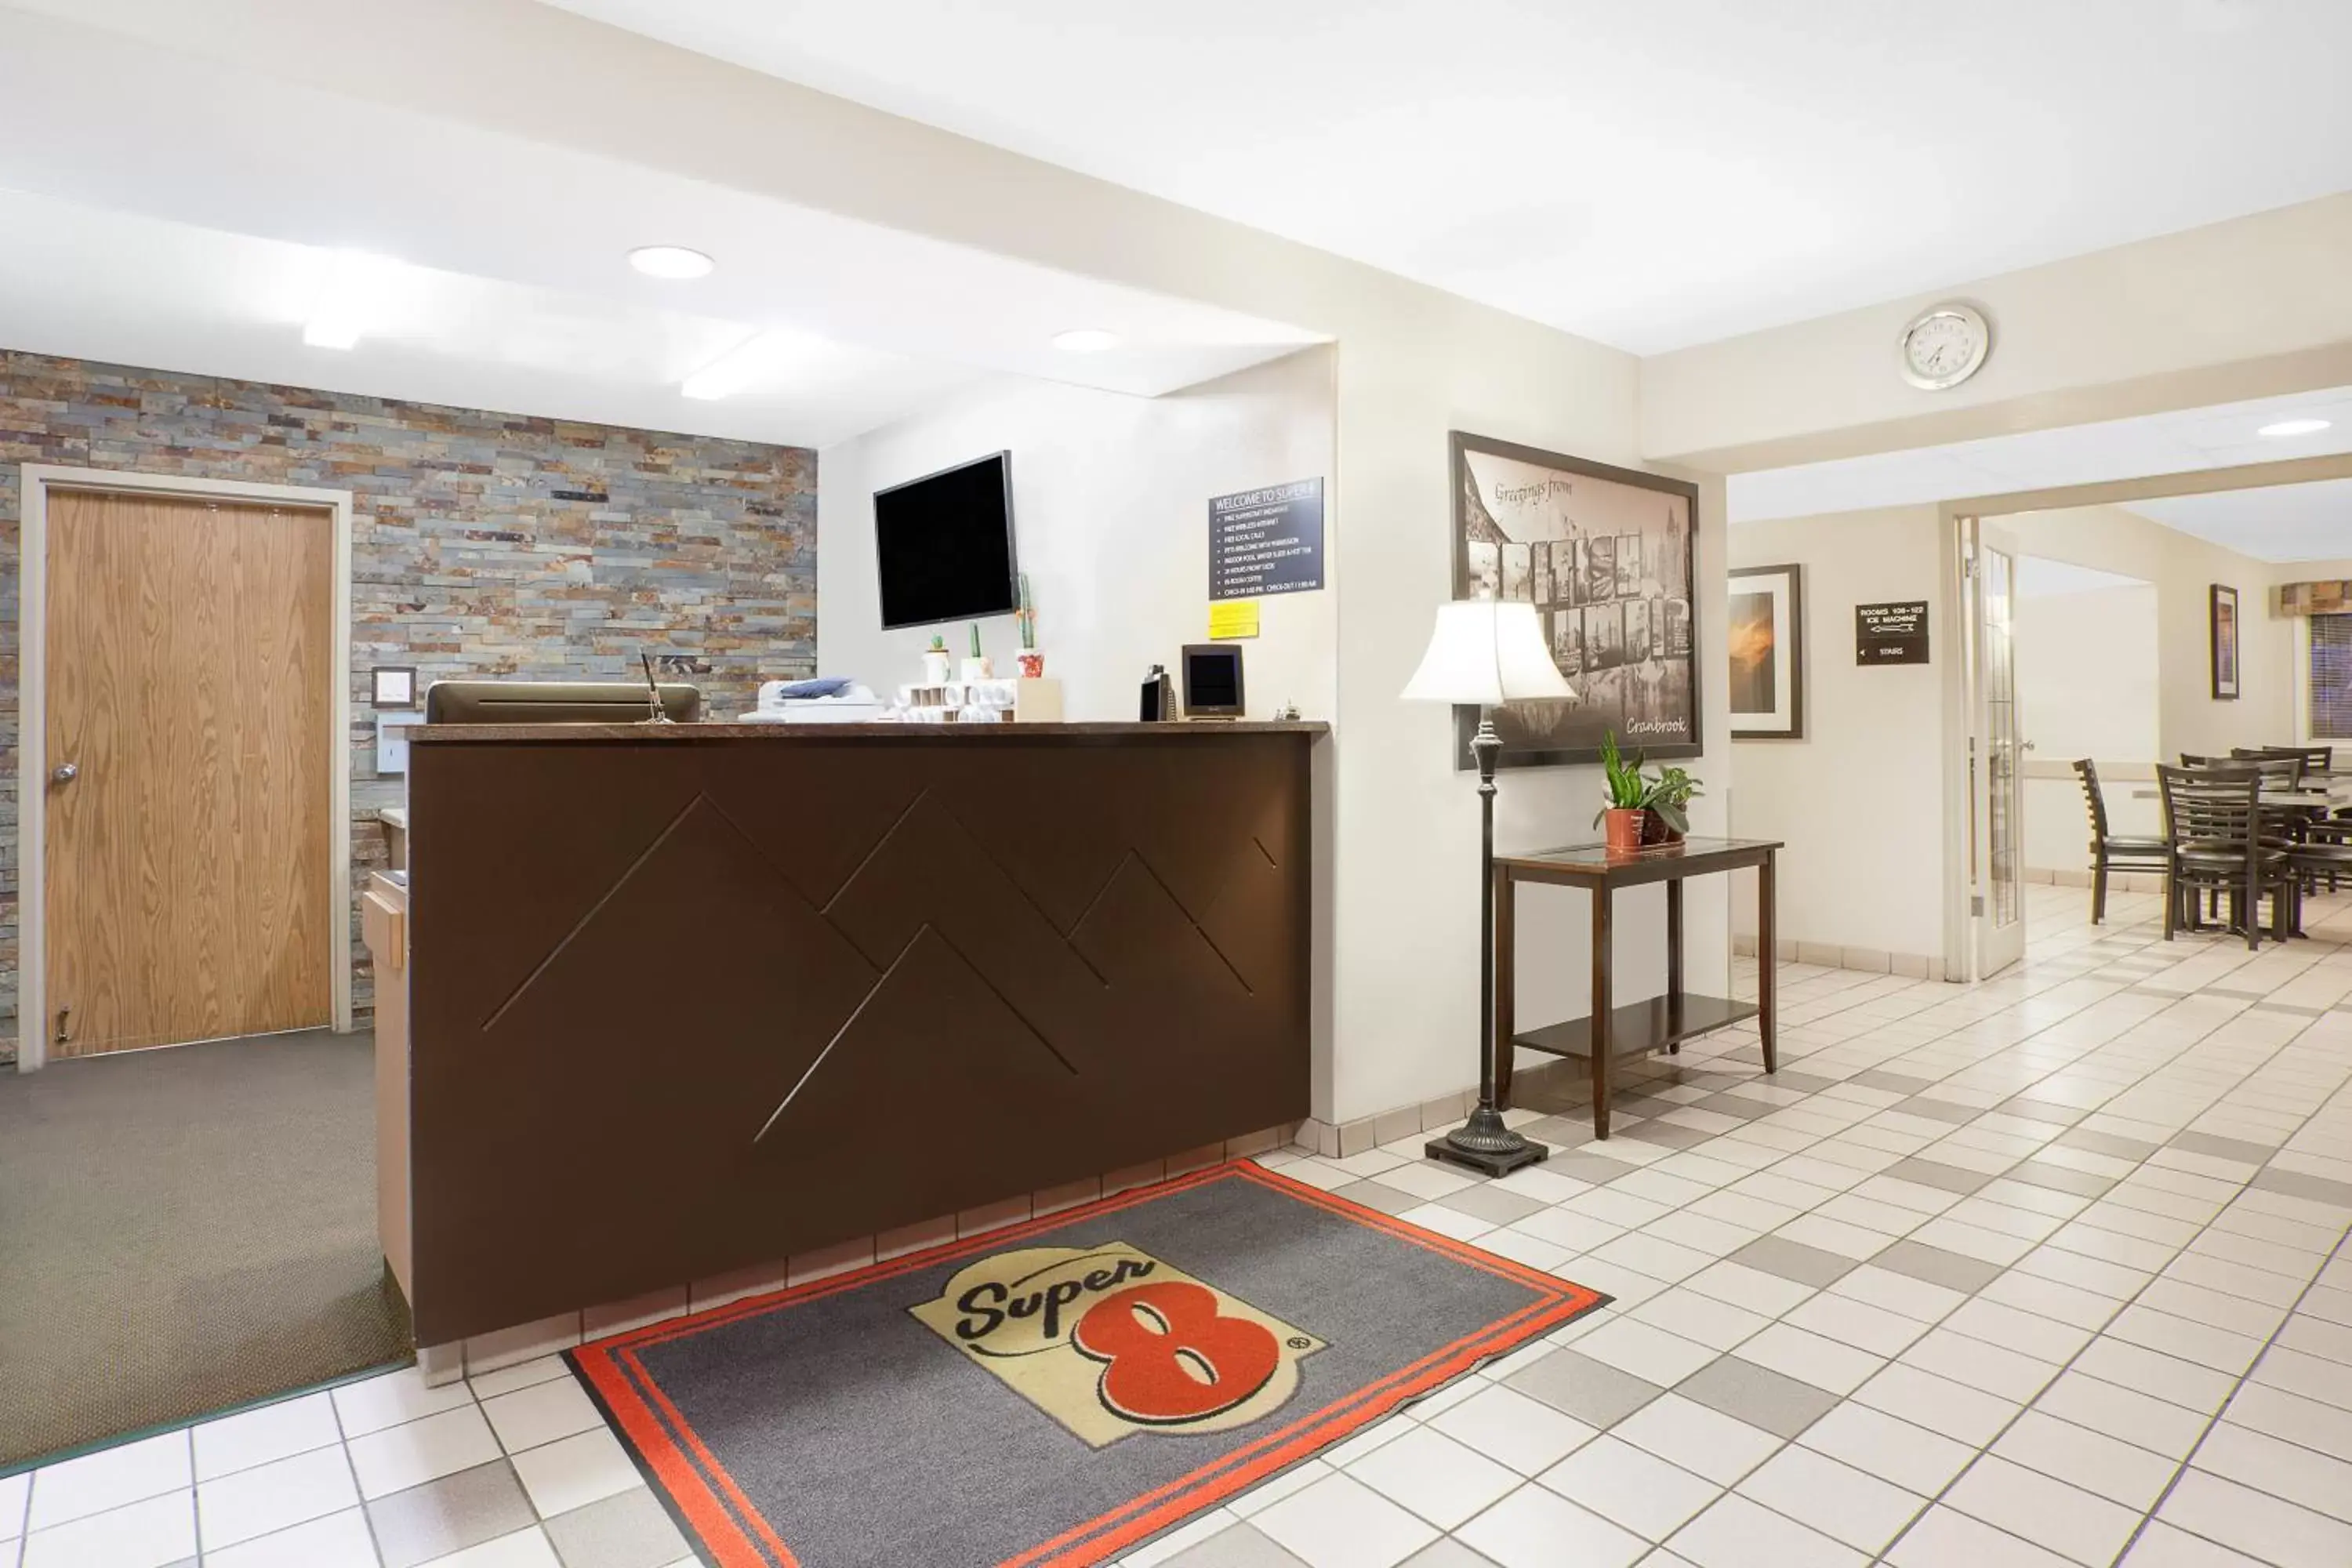 Lobby or reception, Lobby/Reception in Super 8 by Wyndham Cranbrook